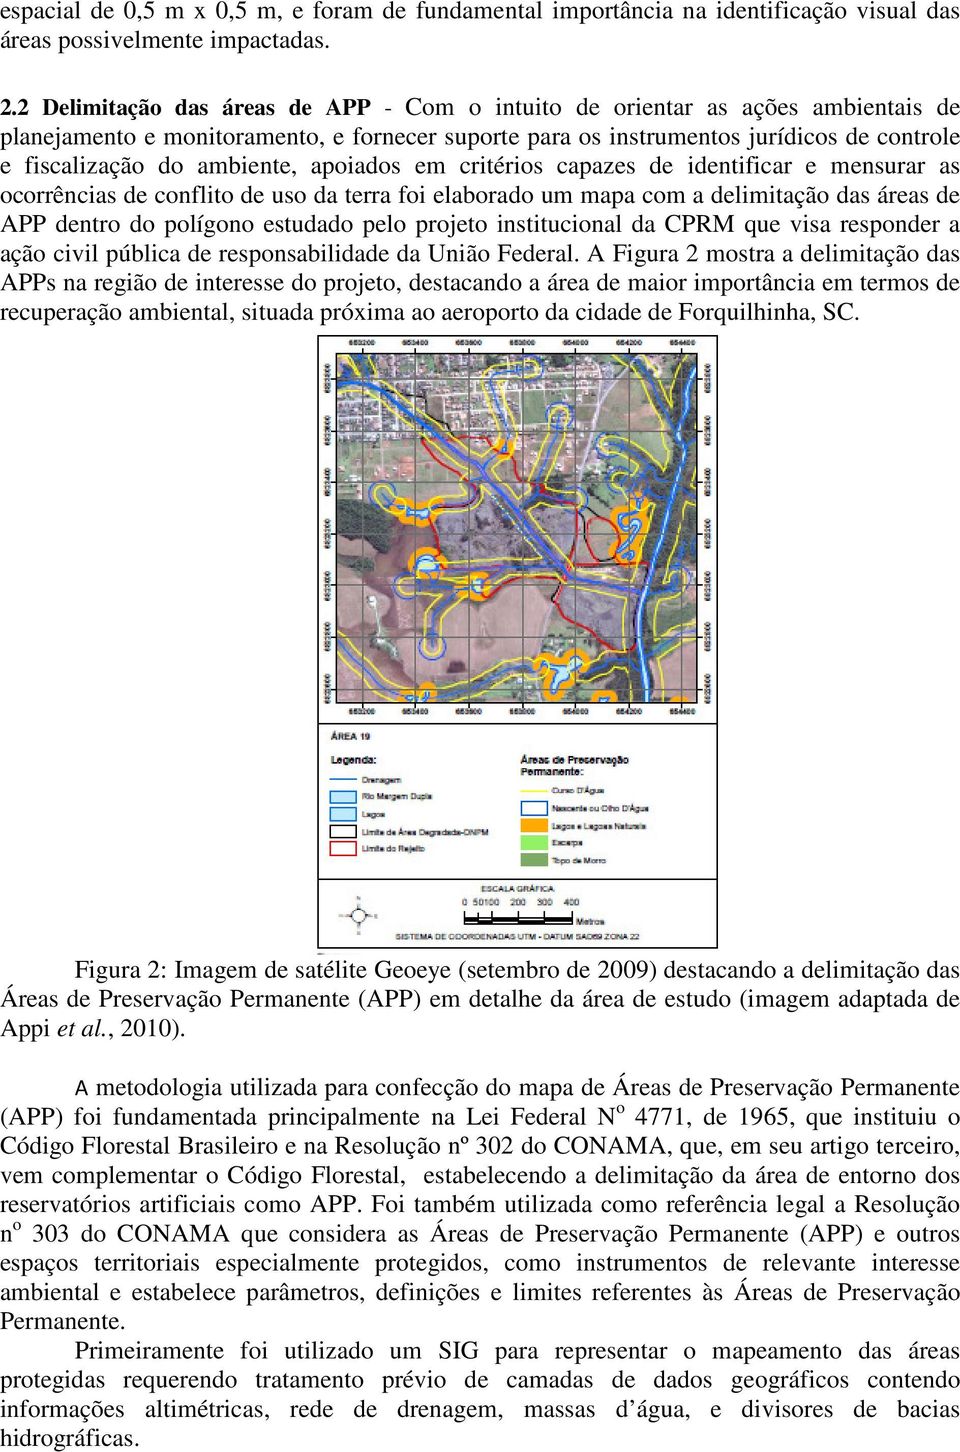 ambiente, apoiados em critérios capazes de identificar e mensurar as ocorrências de conflito de uso da terra foi elaborado um mapa com a delimitação das áreas de APP dentro do polígono estudado pelo